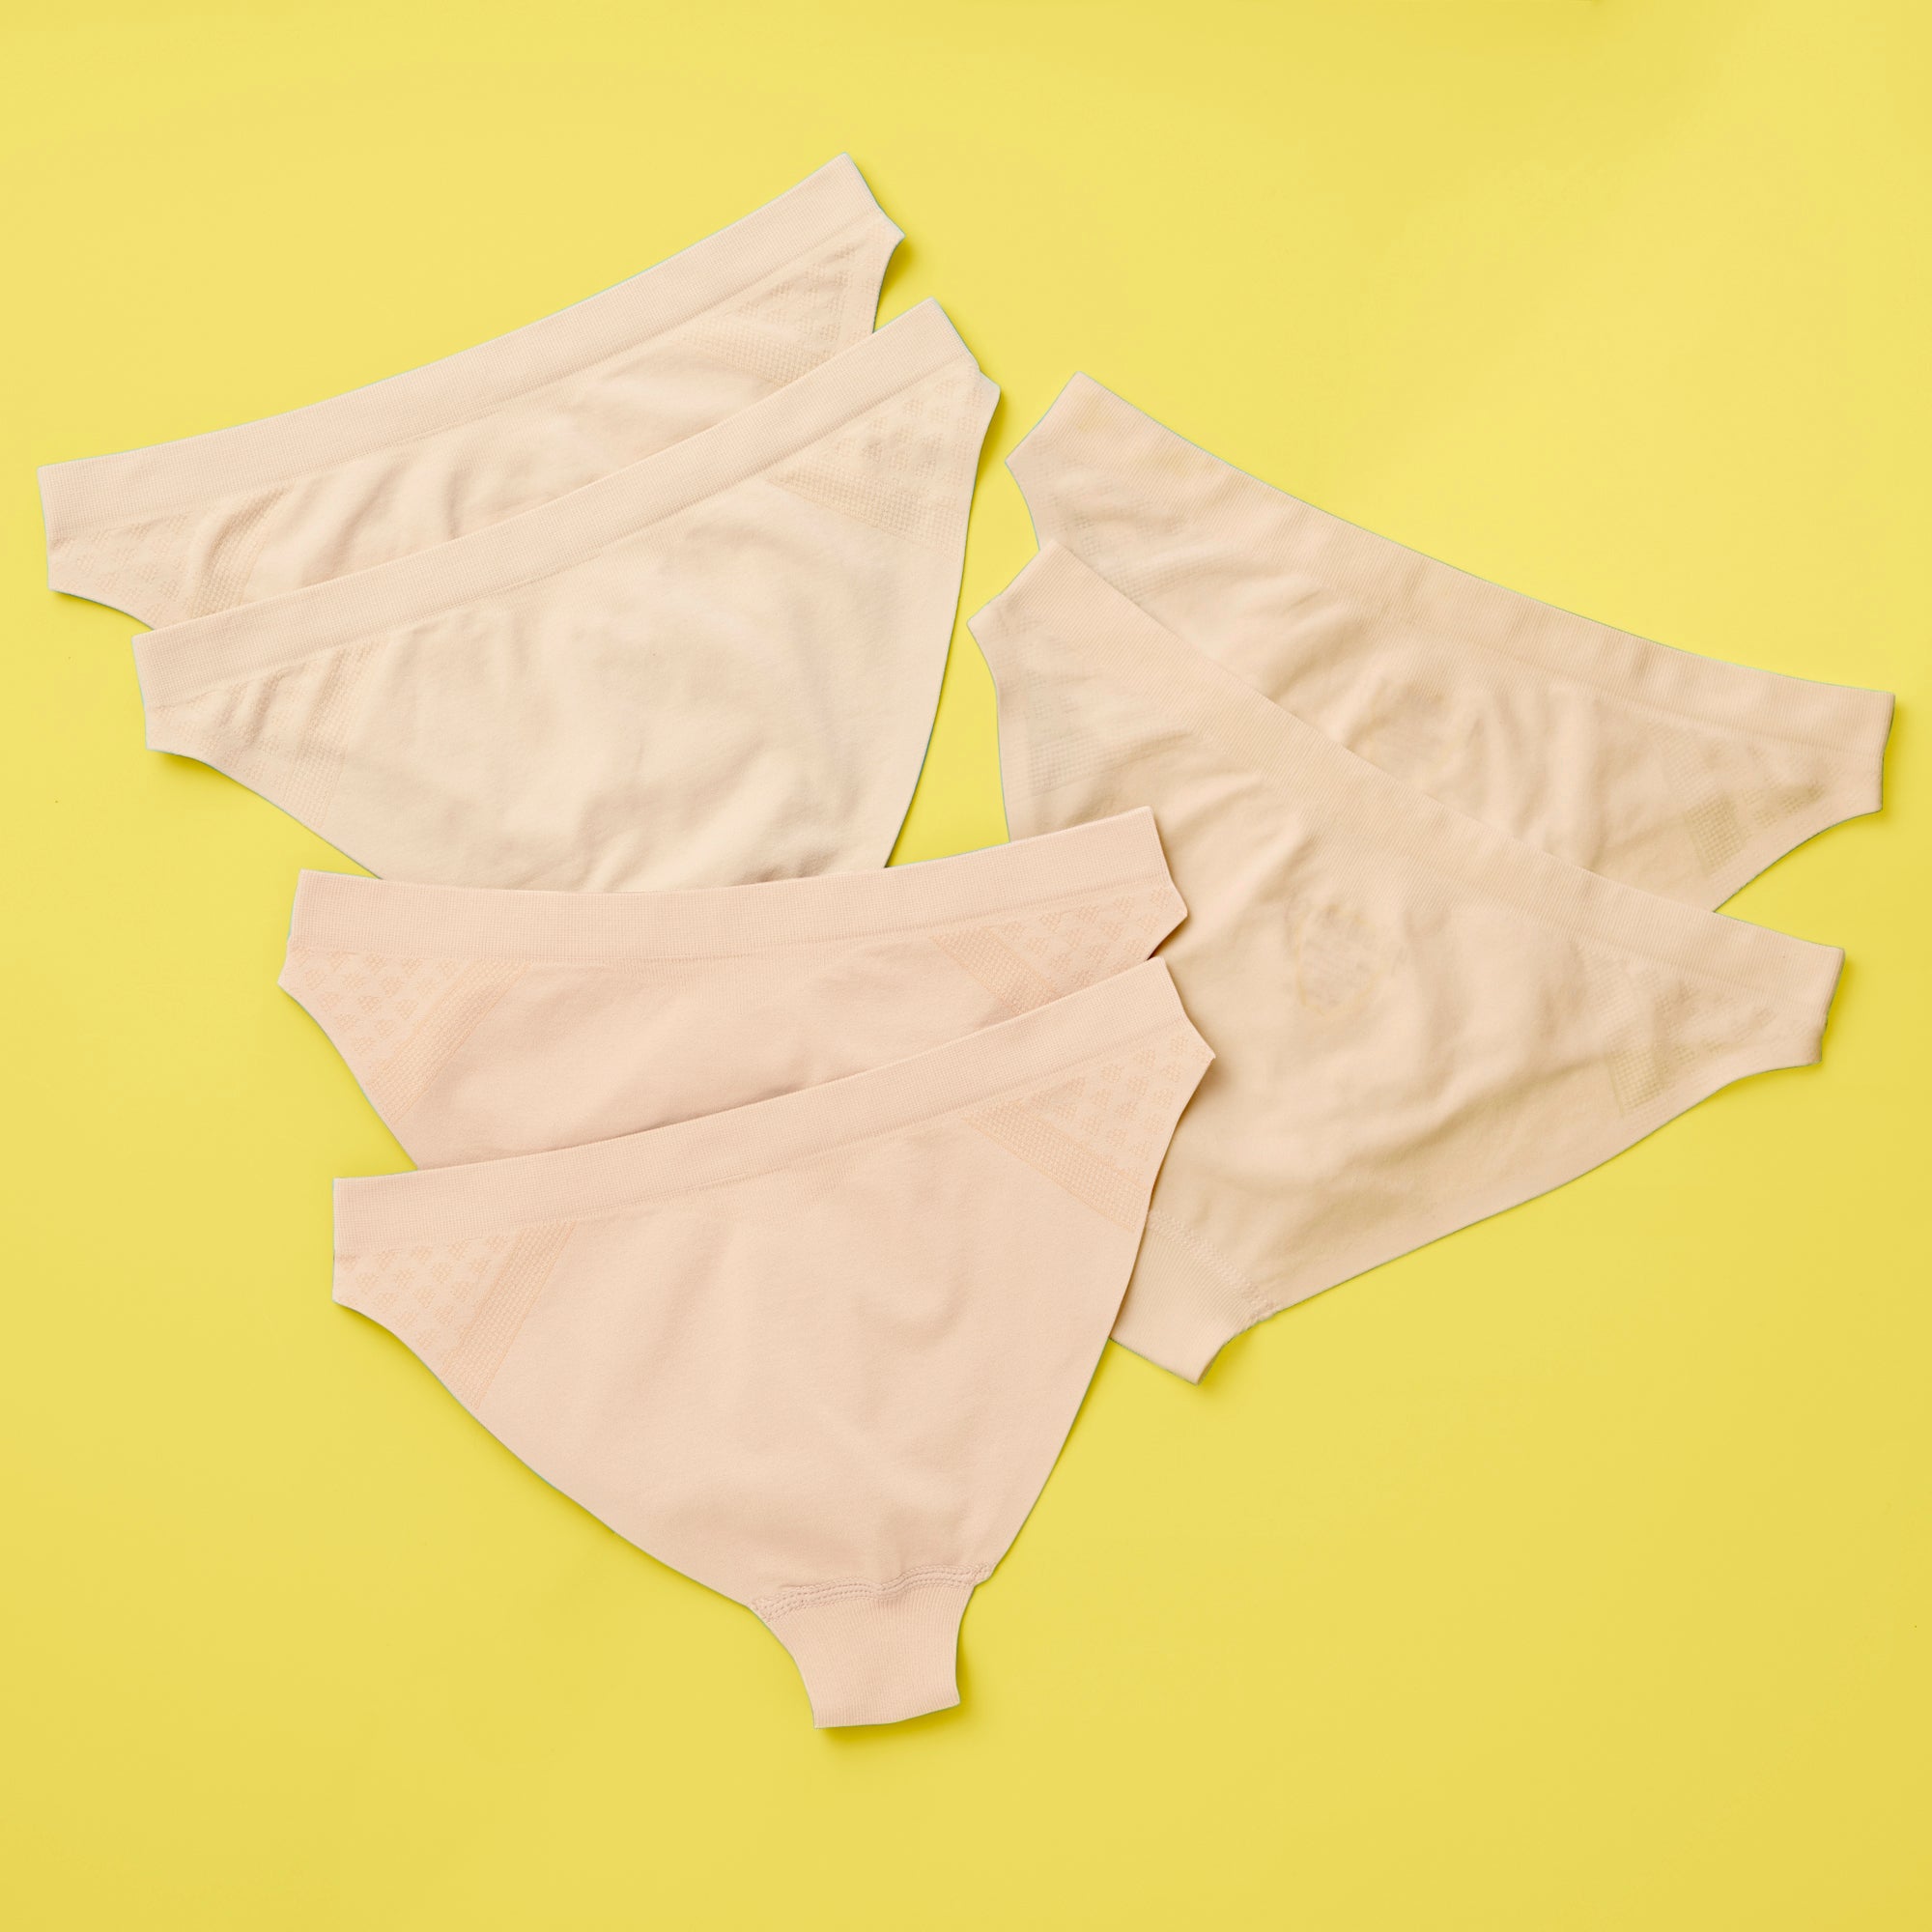 About Seamfree Underwear